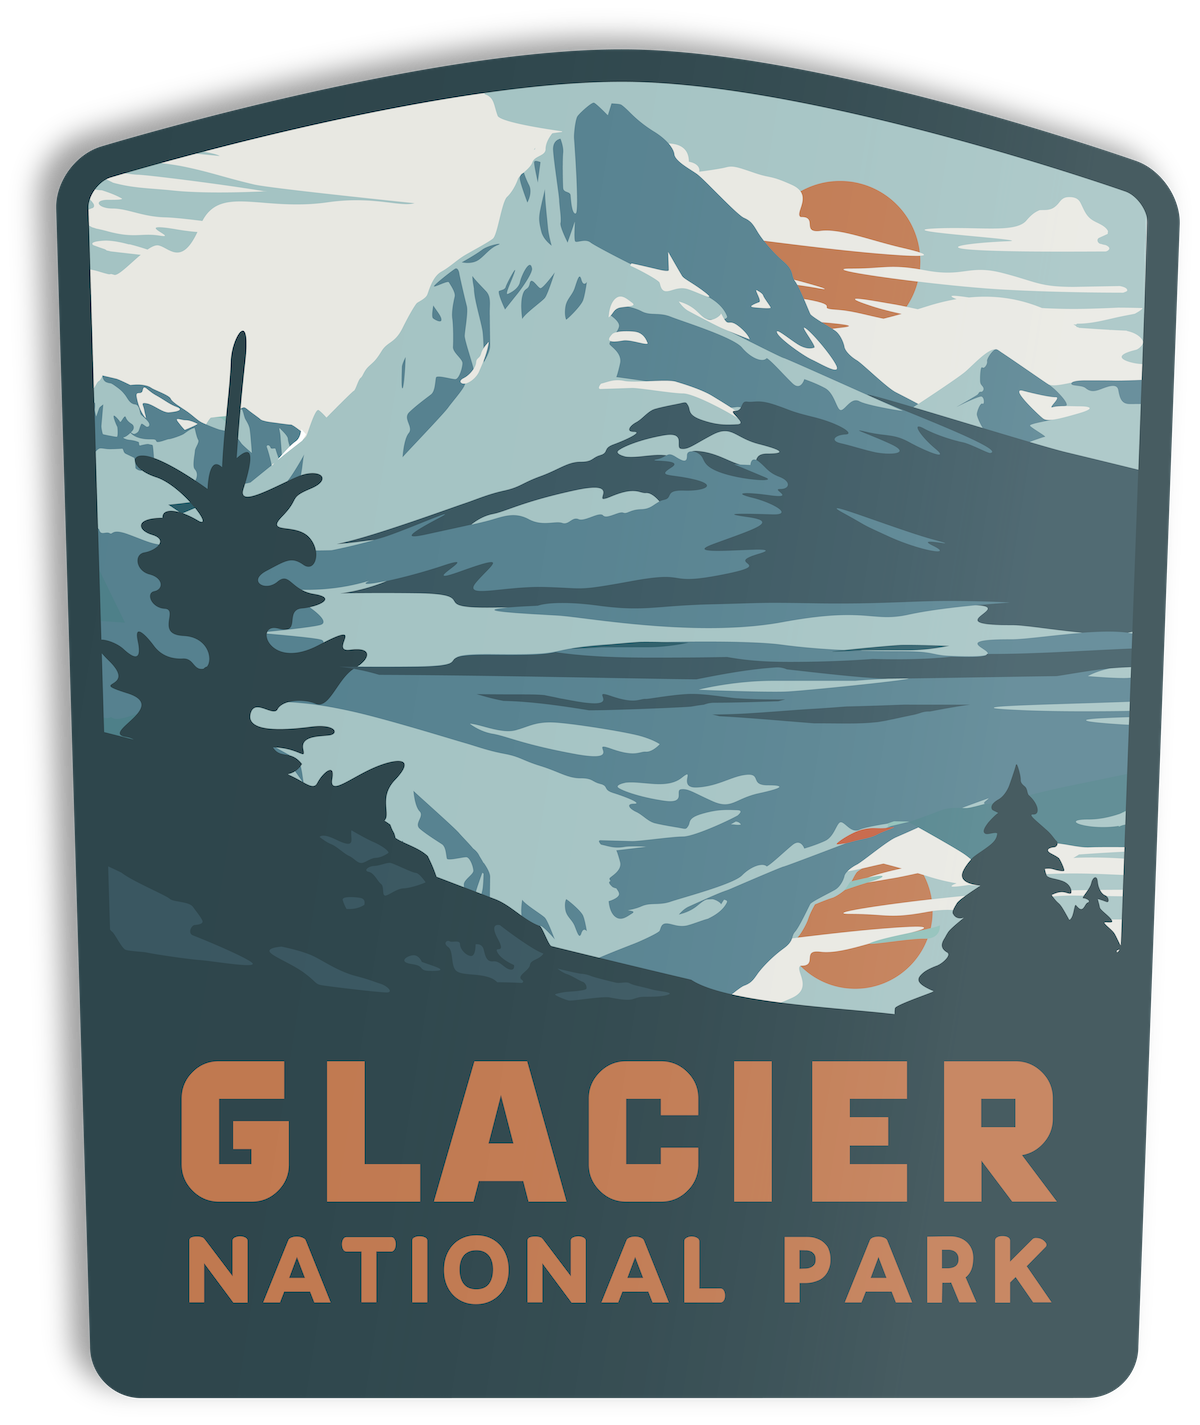 List 100+ Wallpaper Glacier National Park Virginia Falls Stunning